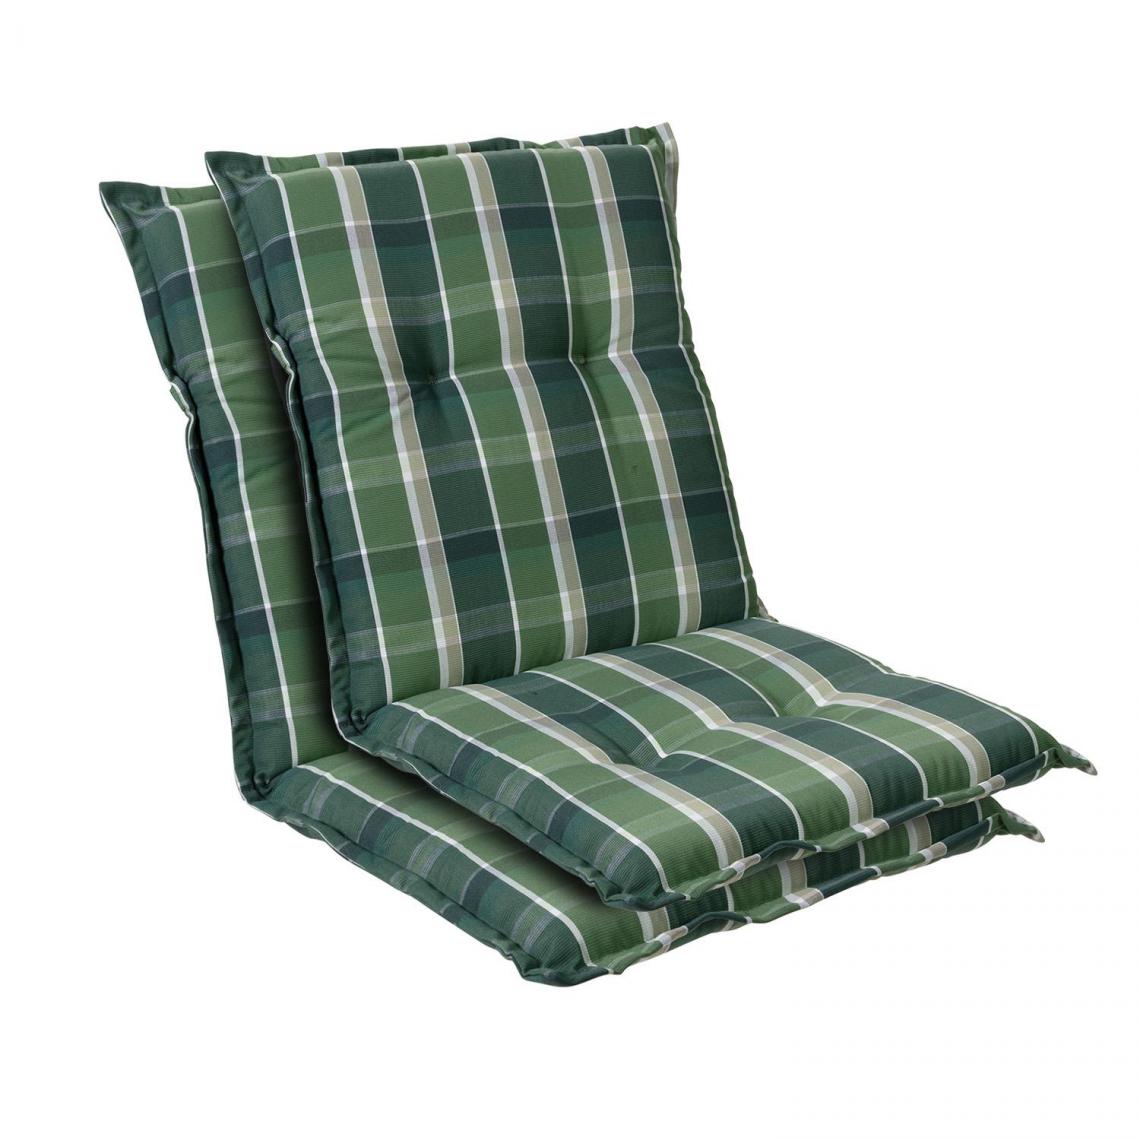 Blumfeldt - Prato coussin de fauteuil dossier bas Polyester 50x100x8cm - Coussins, galettes de jardin